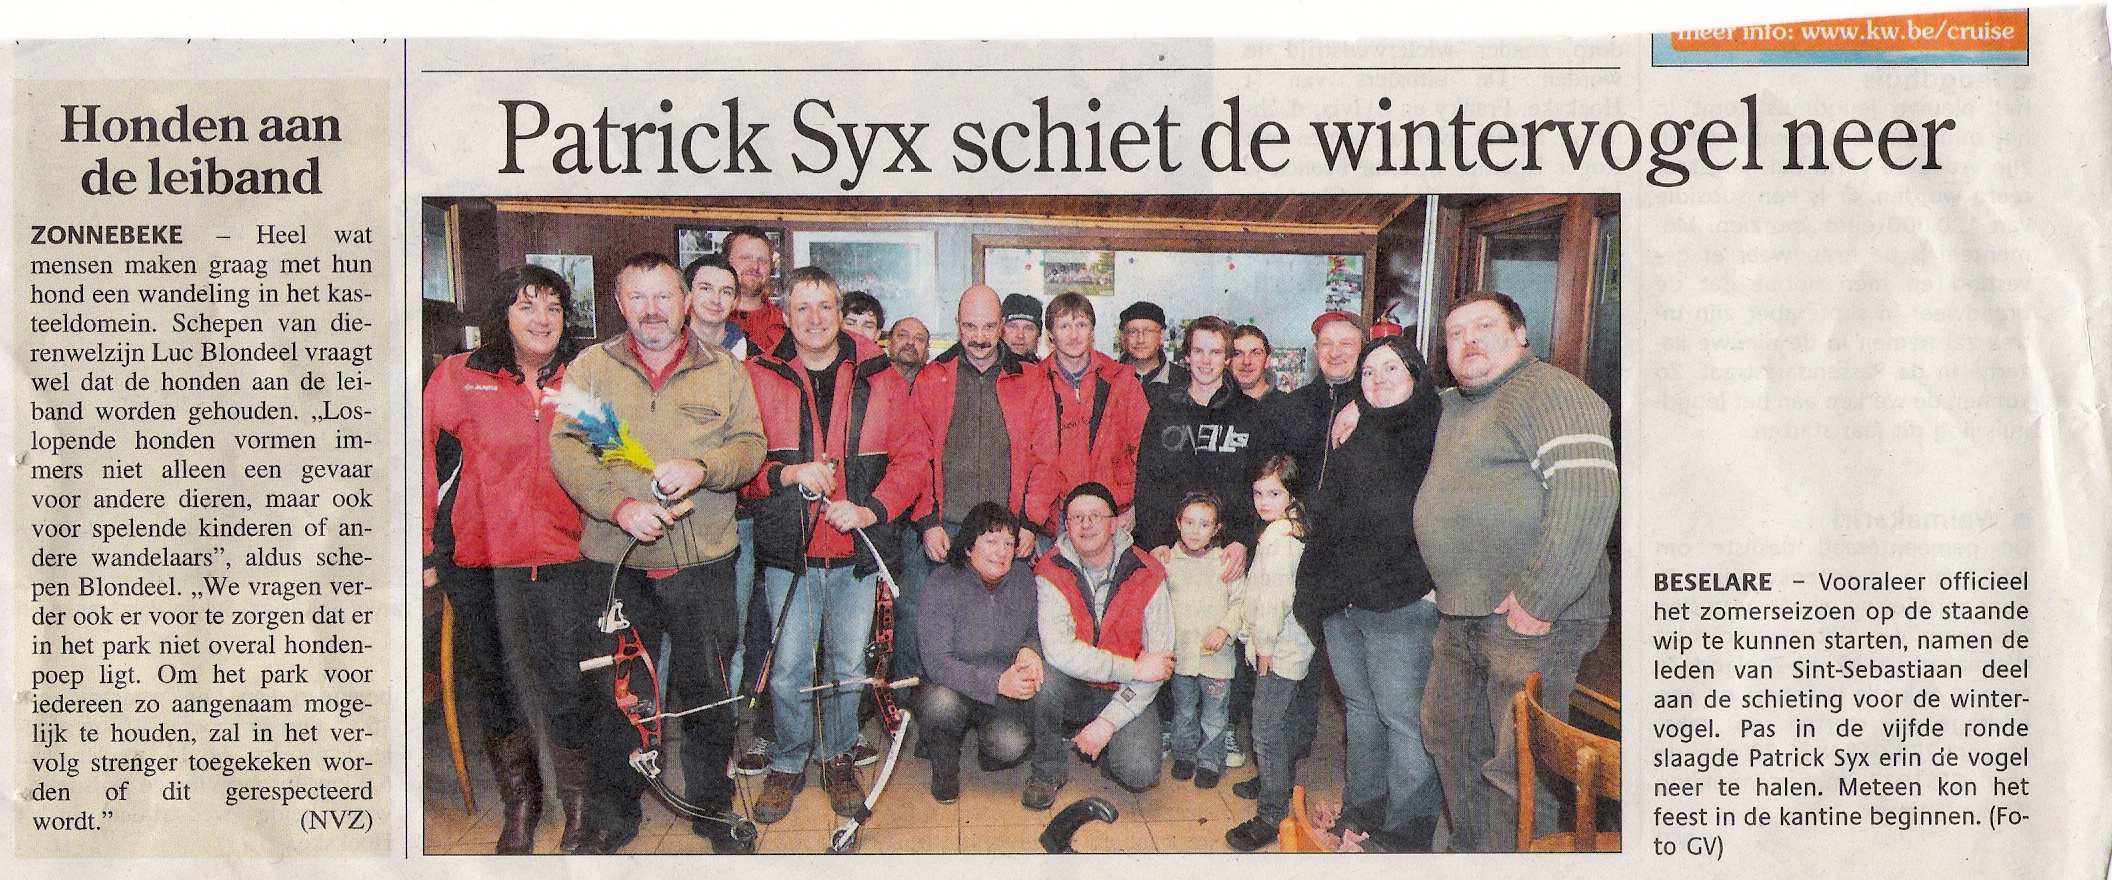 Patrick Syx na vijf ronden Winterkoning 2011!